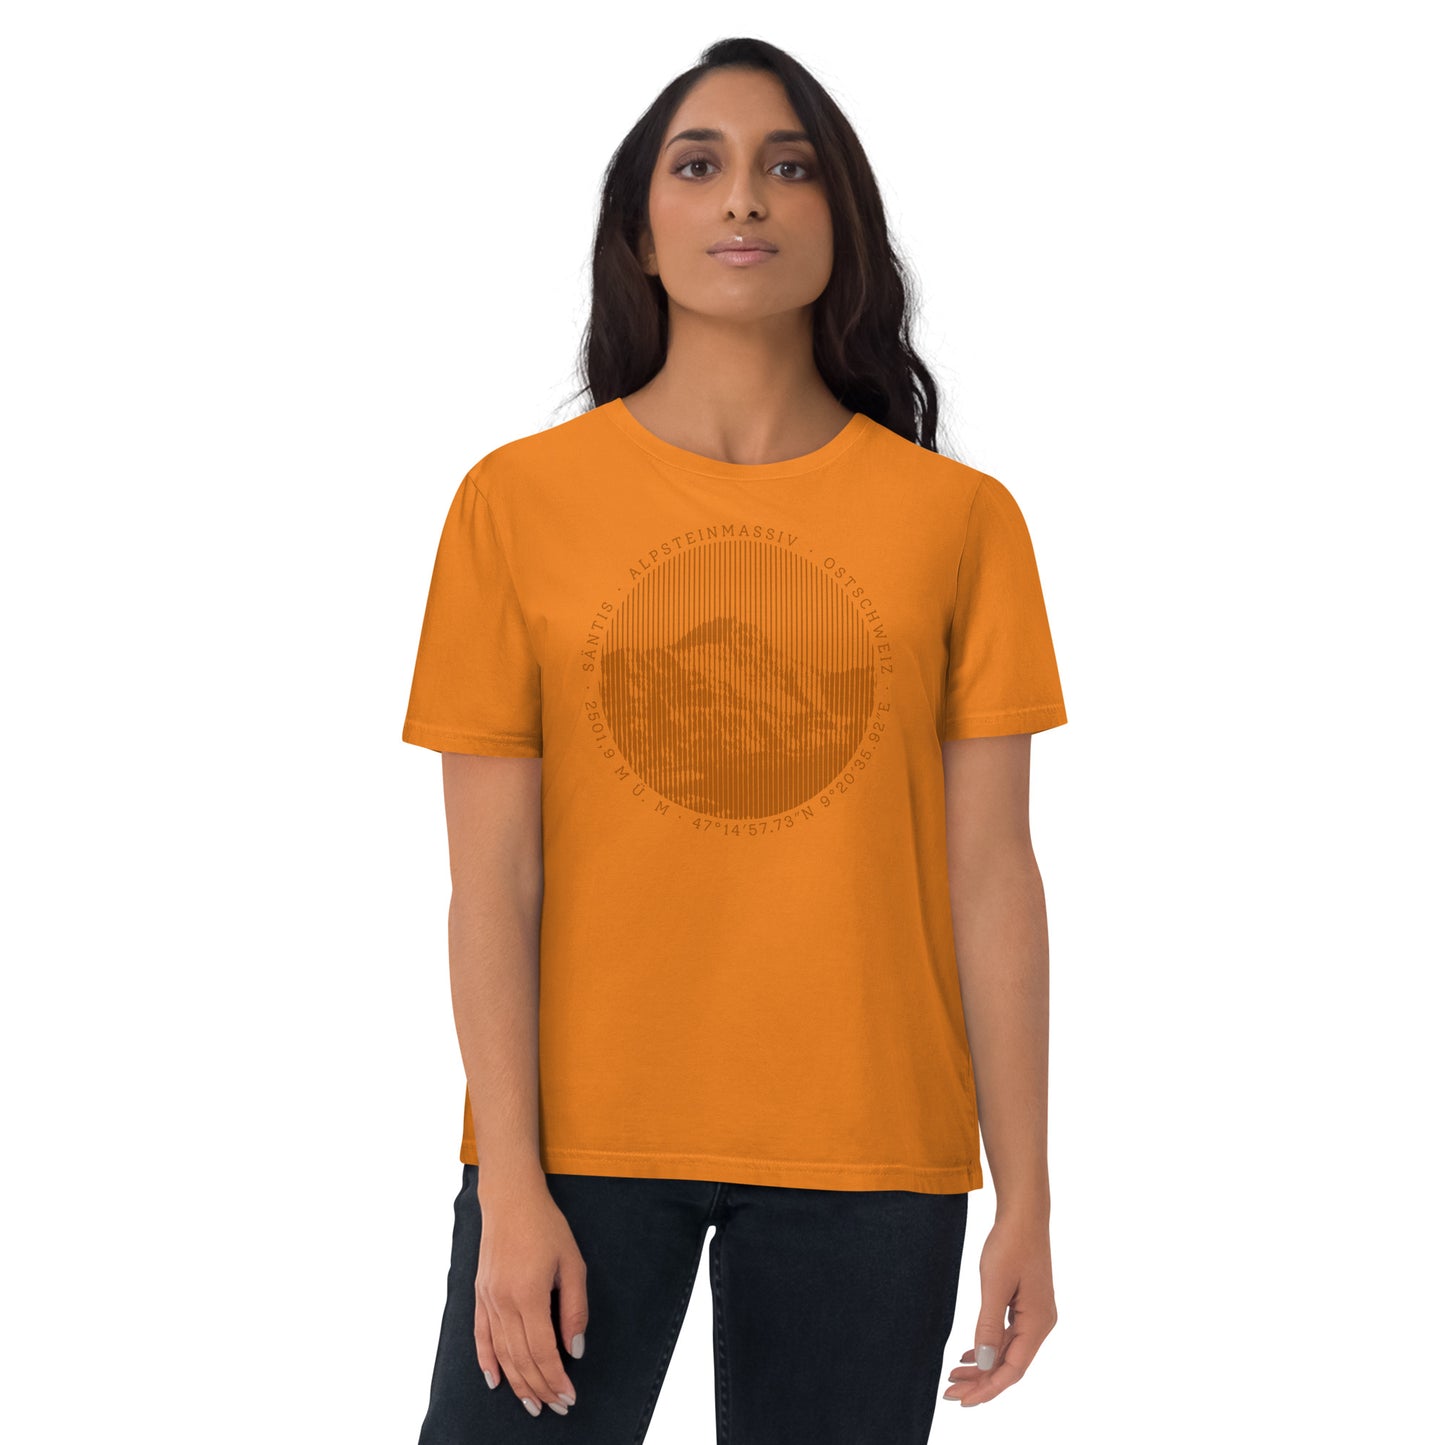 Diese Bergfreundin trägt ein oranges Damen T-Shirt aus Bio-Baumwolle von Vallada mit einem Aufdruck des Säntis-Gipfels. Damit drückt sie ihre Liebe zu den Alpen und den Appenzeller Alpen im Besonderen aus.